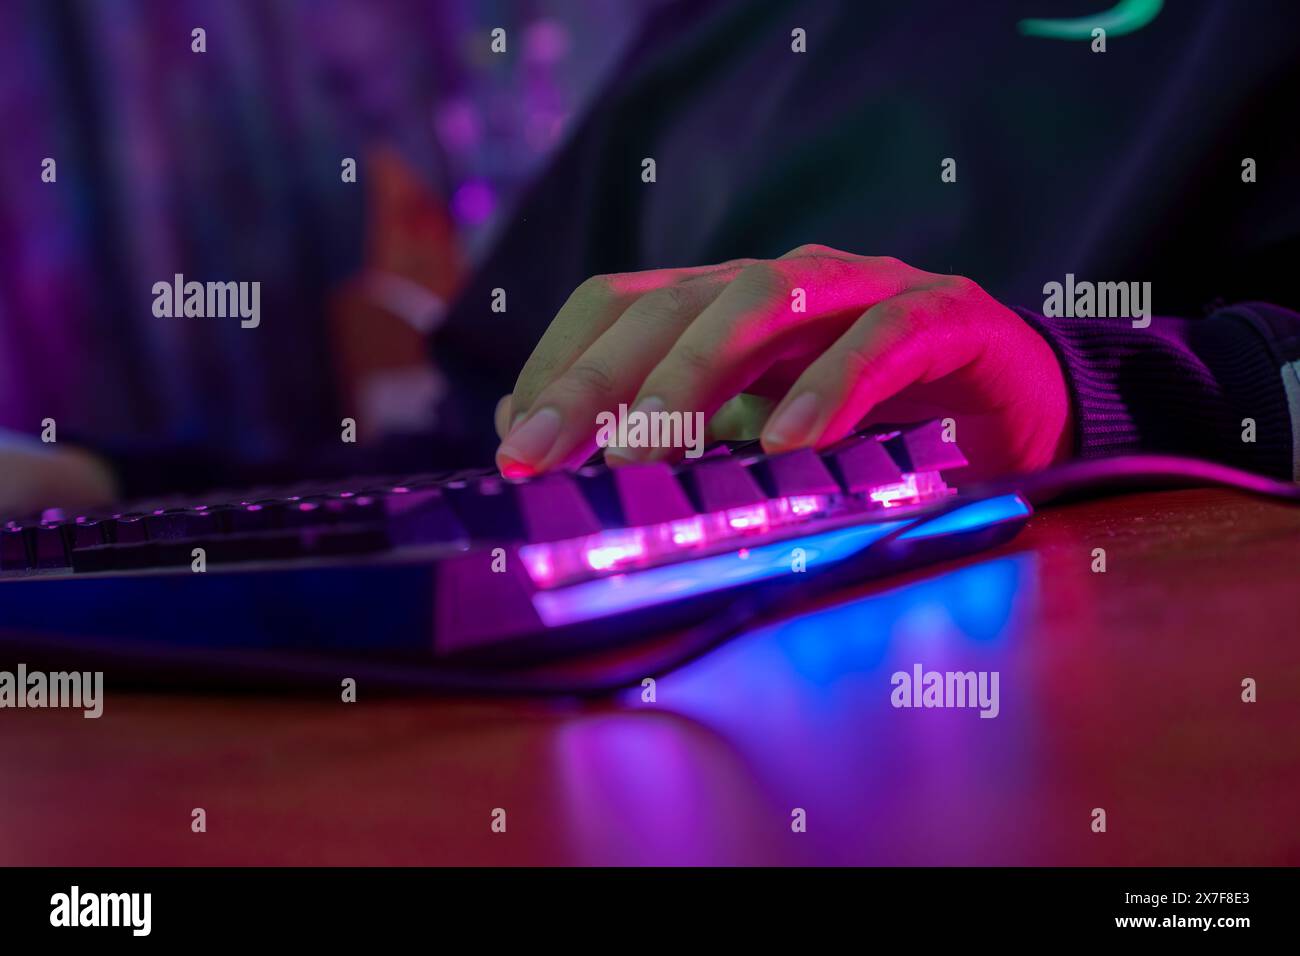 Professionelle online gamer Hand mechanische Tastatur in Neon Farben verwischen Hintergrund. Soft Focus, Ansicht von hinten. Stockfoto